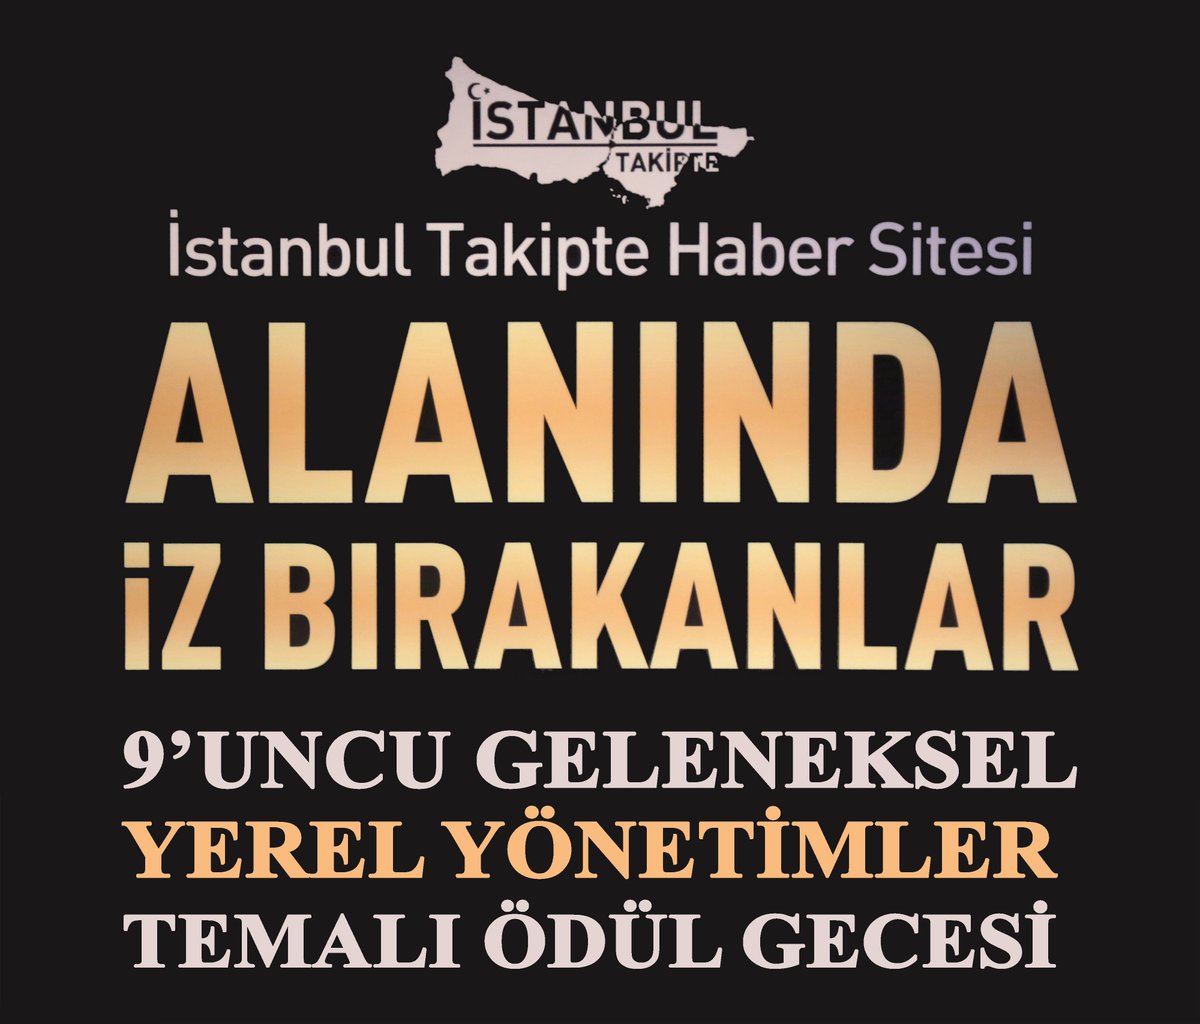 İstanbul Takipte Haber Sitesi “Alanında İz Bırakanlar” 9’uncu Geleneksel ödül gecemizin “Sosyal Medya” dalında ödül alacakların bir kısmı belli oldu. @GulbeyazZorlu @muratbay_raktar @Yasartosun69 @mehtap08101972 @NafizYavuz5 @SecmenMucahit @Zahide98411791 
facebook.com/photo?fbid=102…